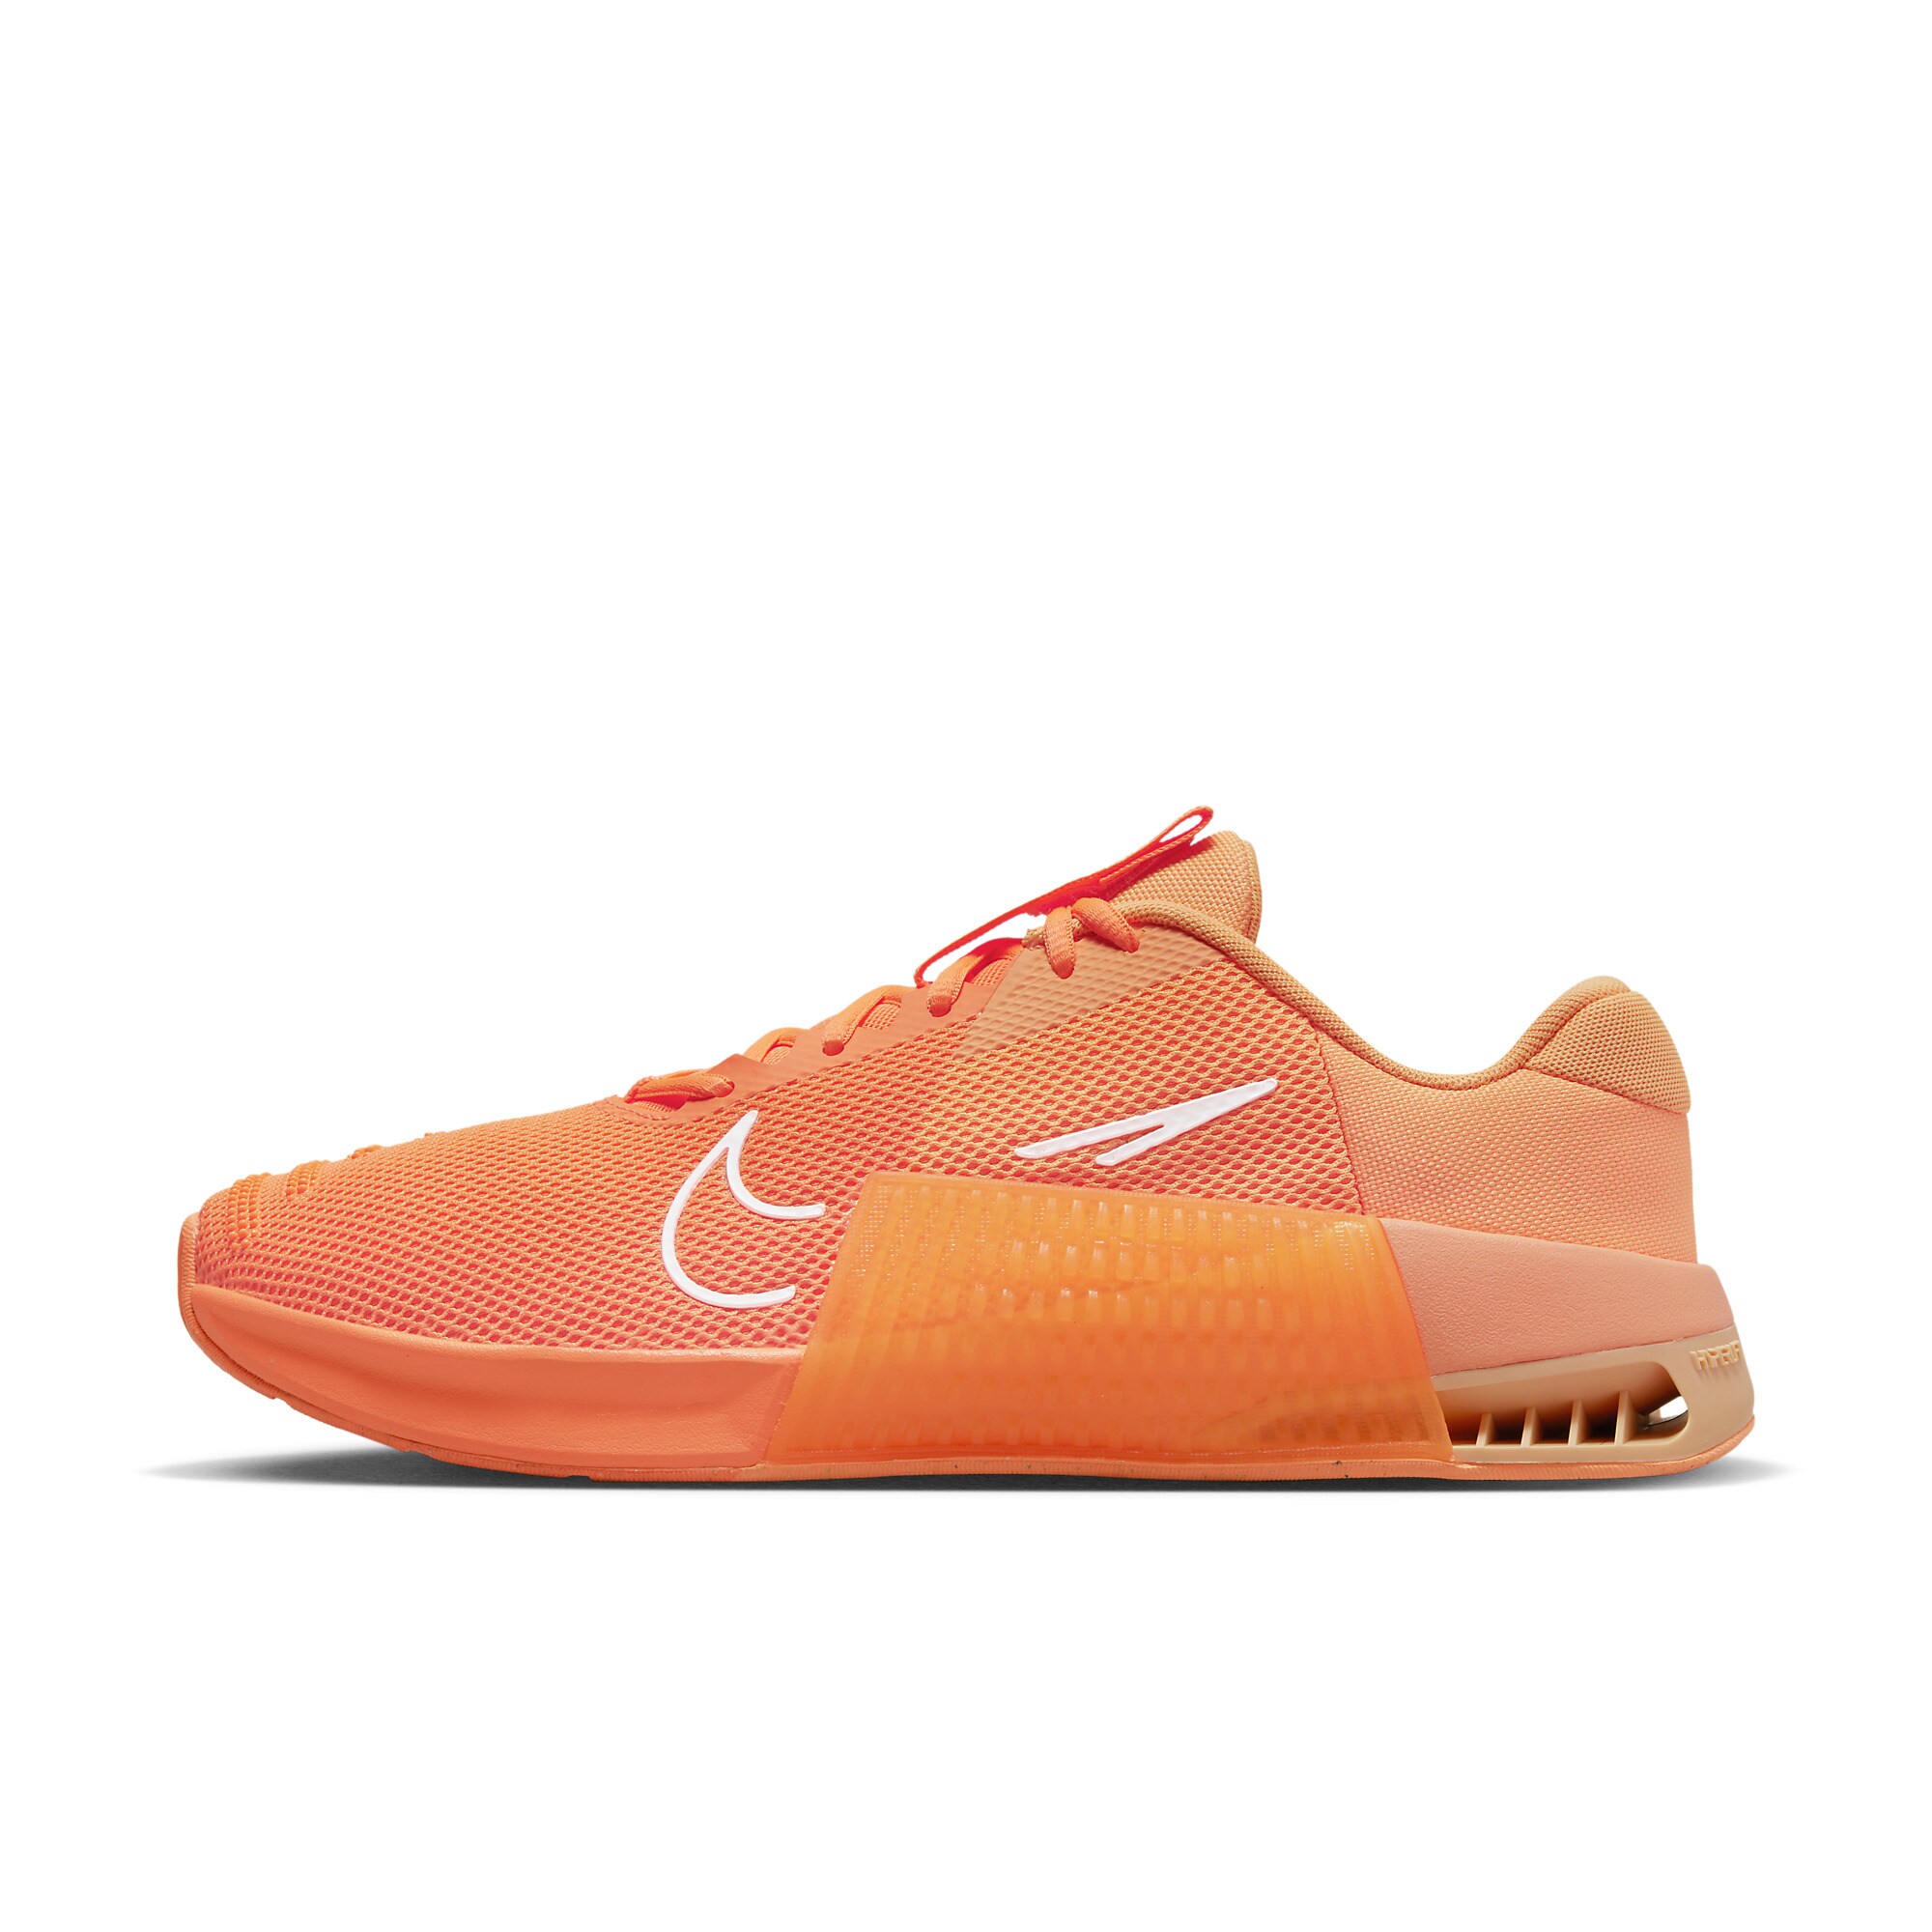 Nike Metcon 9 AMP - Atomic Orange/White/Ice Peach - Mens Shoes | Pro ...